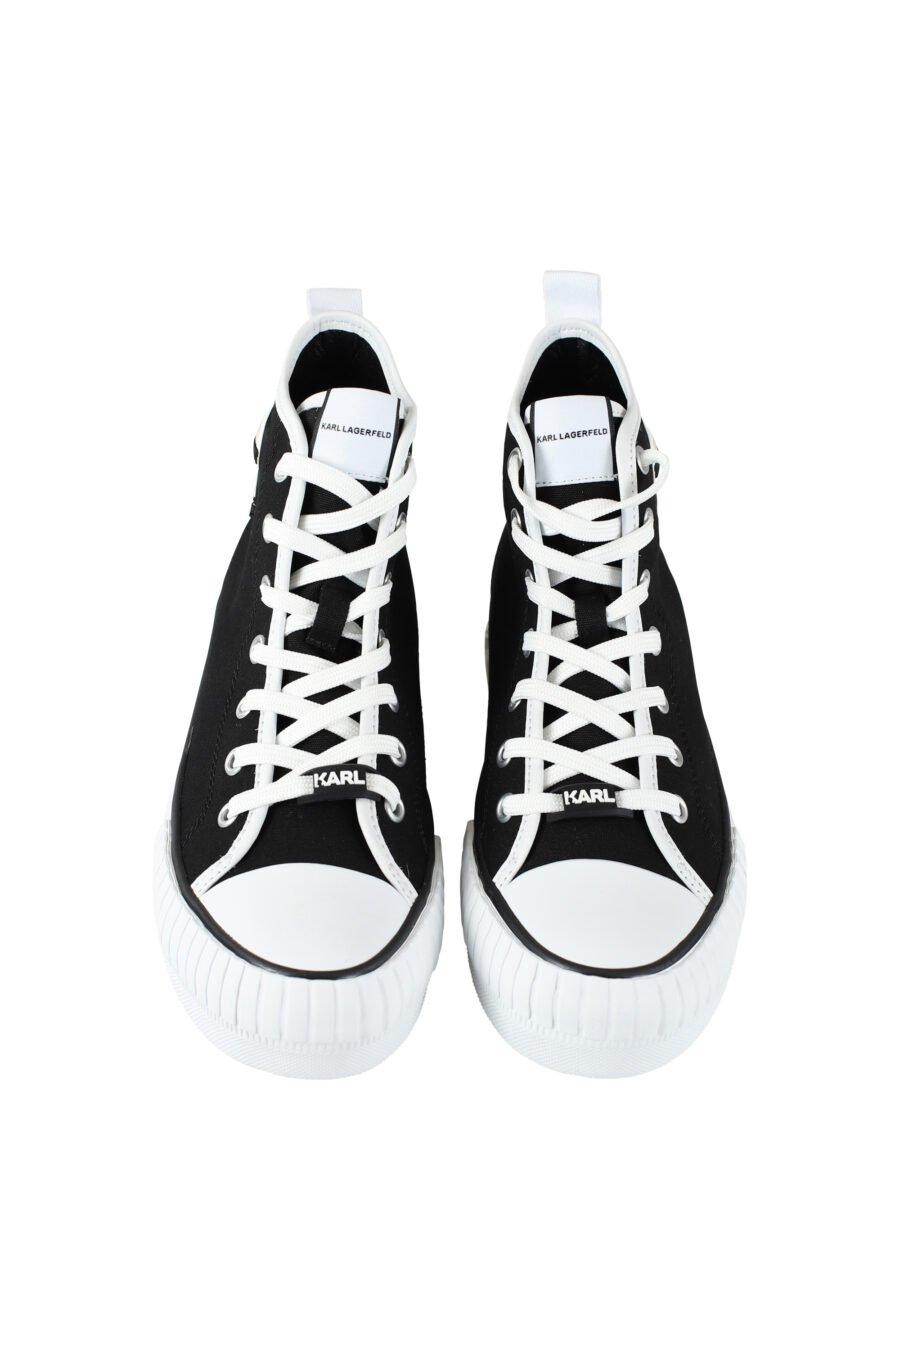 Zapatillas altas negras estilo converse con logo "karl" en goma - IMG 9613